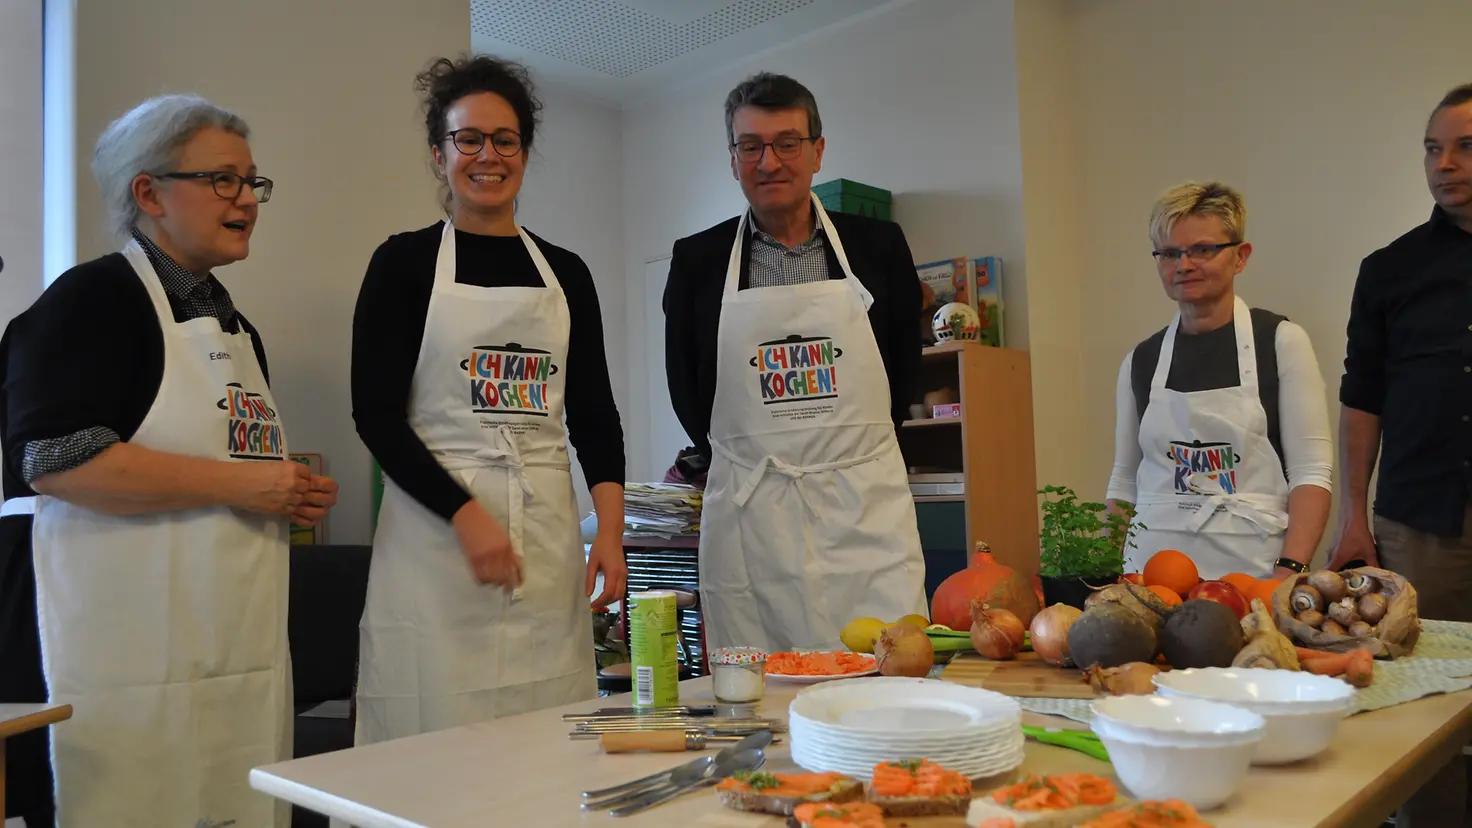 Ich kann kochen! Schulung mit Verbraucherschutzminister Dieter Lauinger und der Barmer